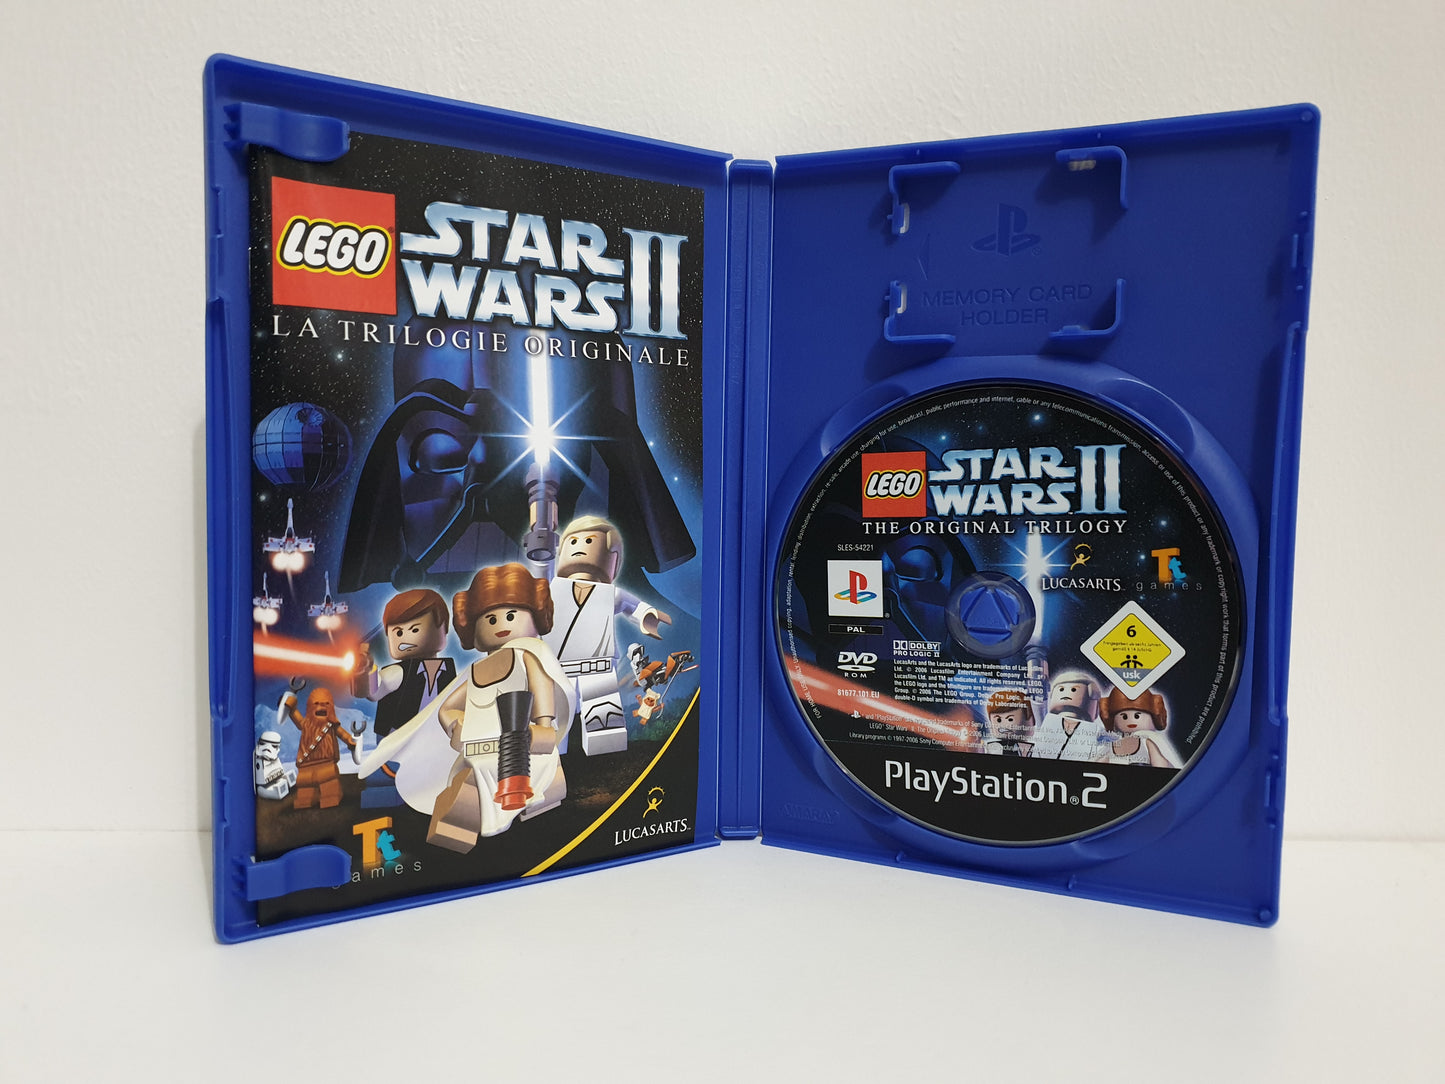 LEGO Star Wars II : La Trilogie Originale PS2 - Occasion excellent état